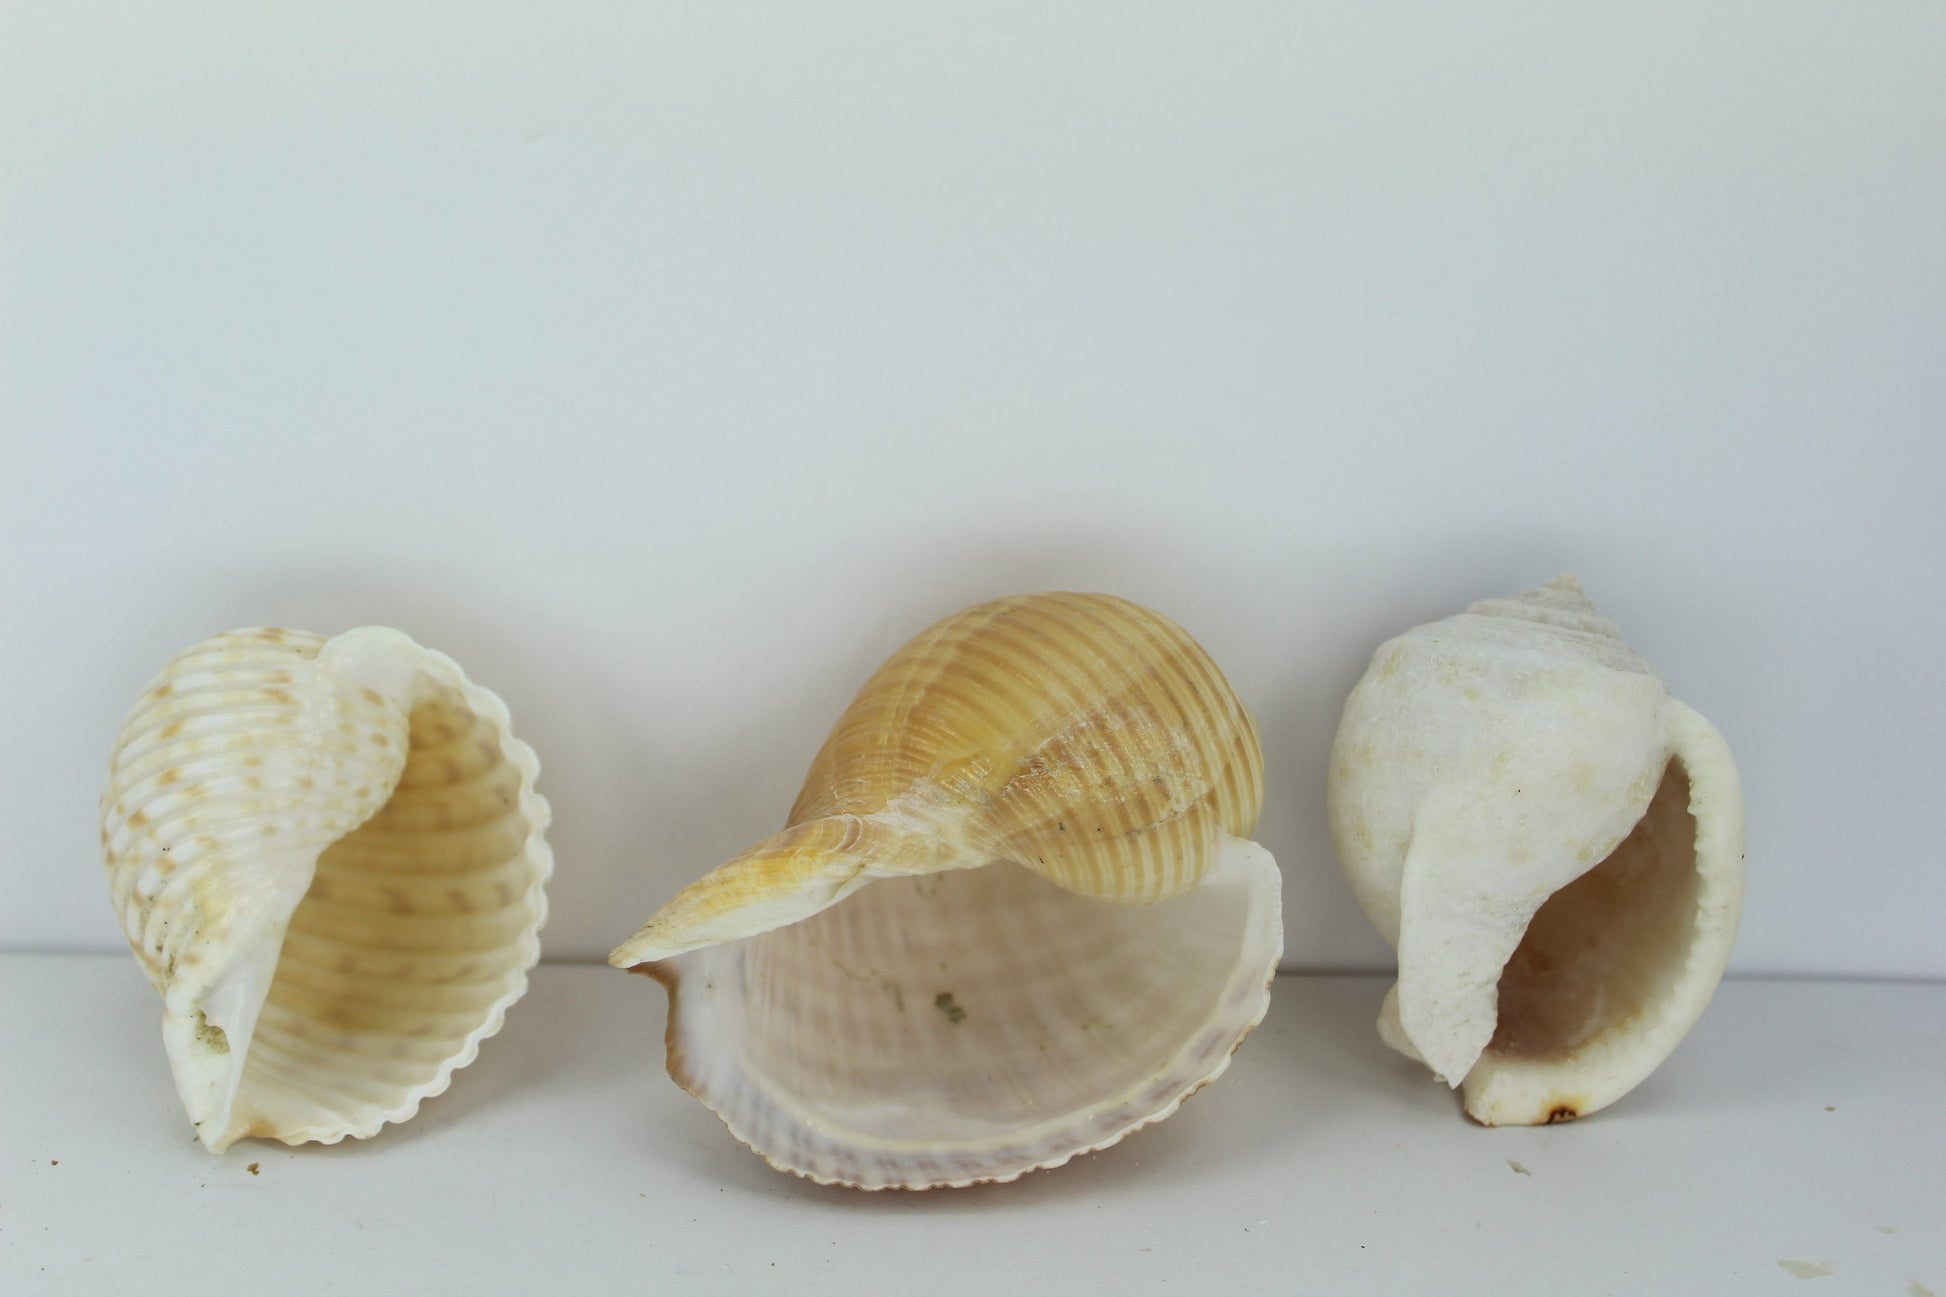 Florida 3 Shells Vintage Tuns Bonnet Estate Collection Shell Art Collectibles Wreaths Aquarium older